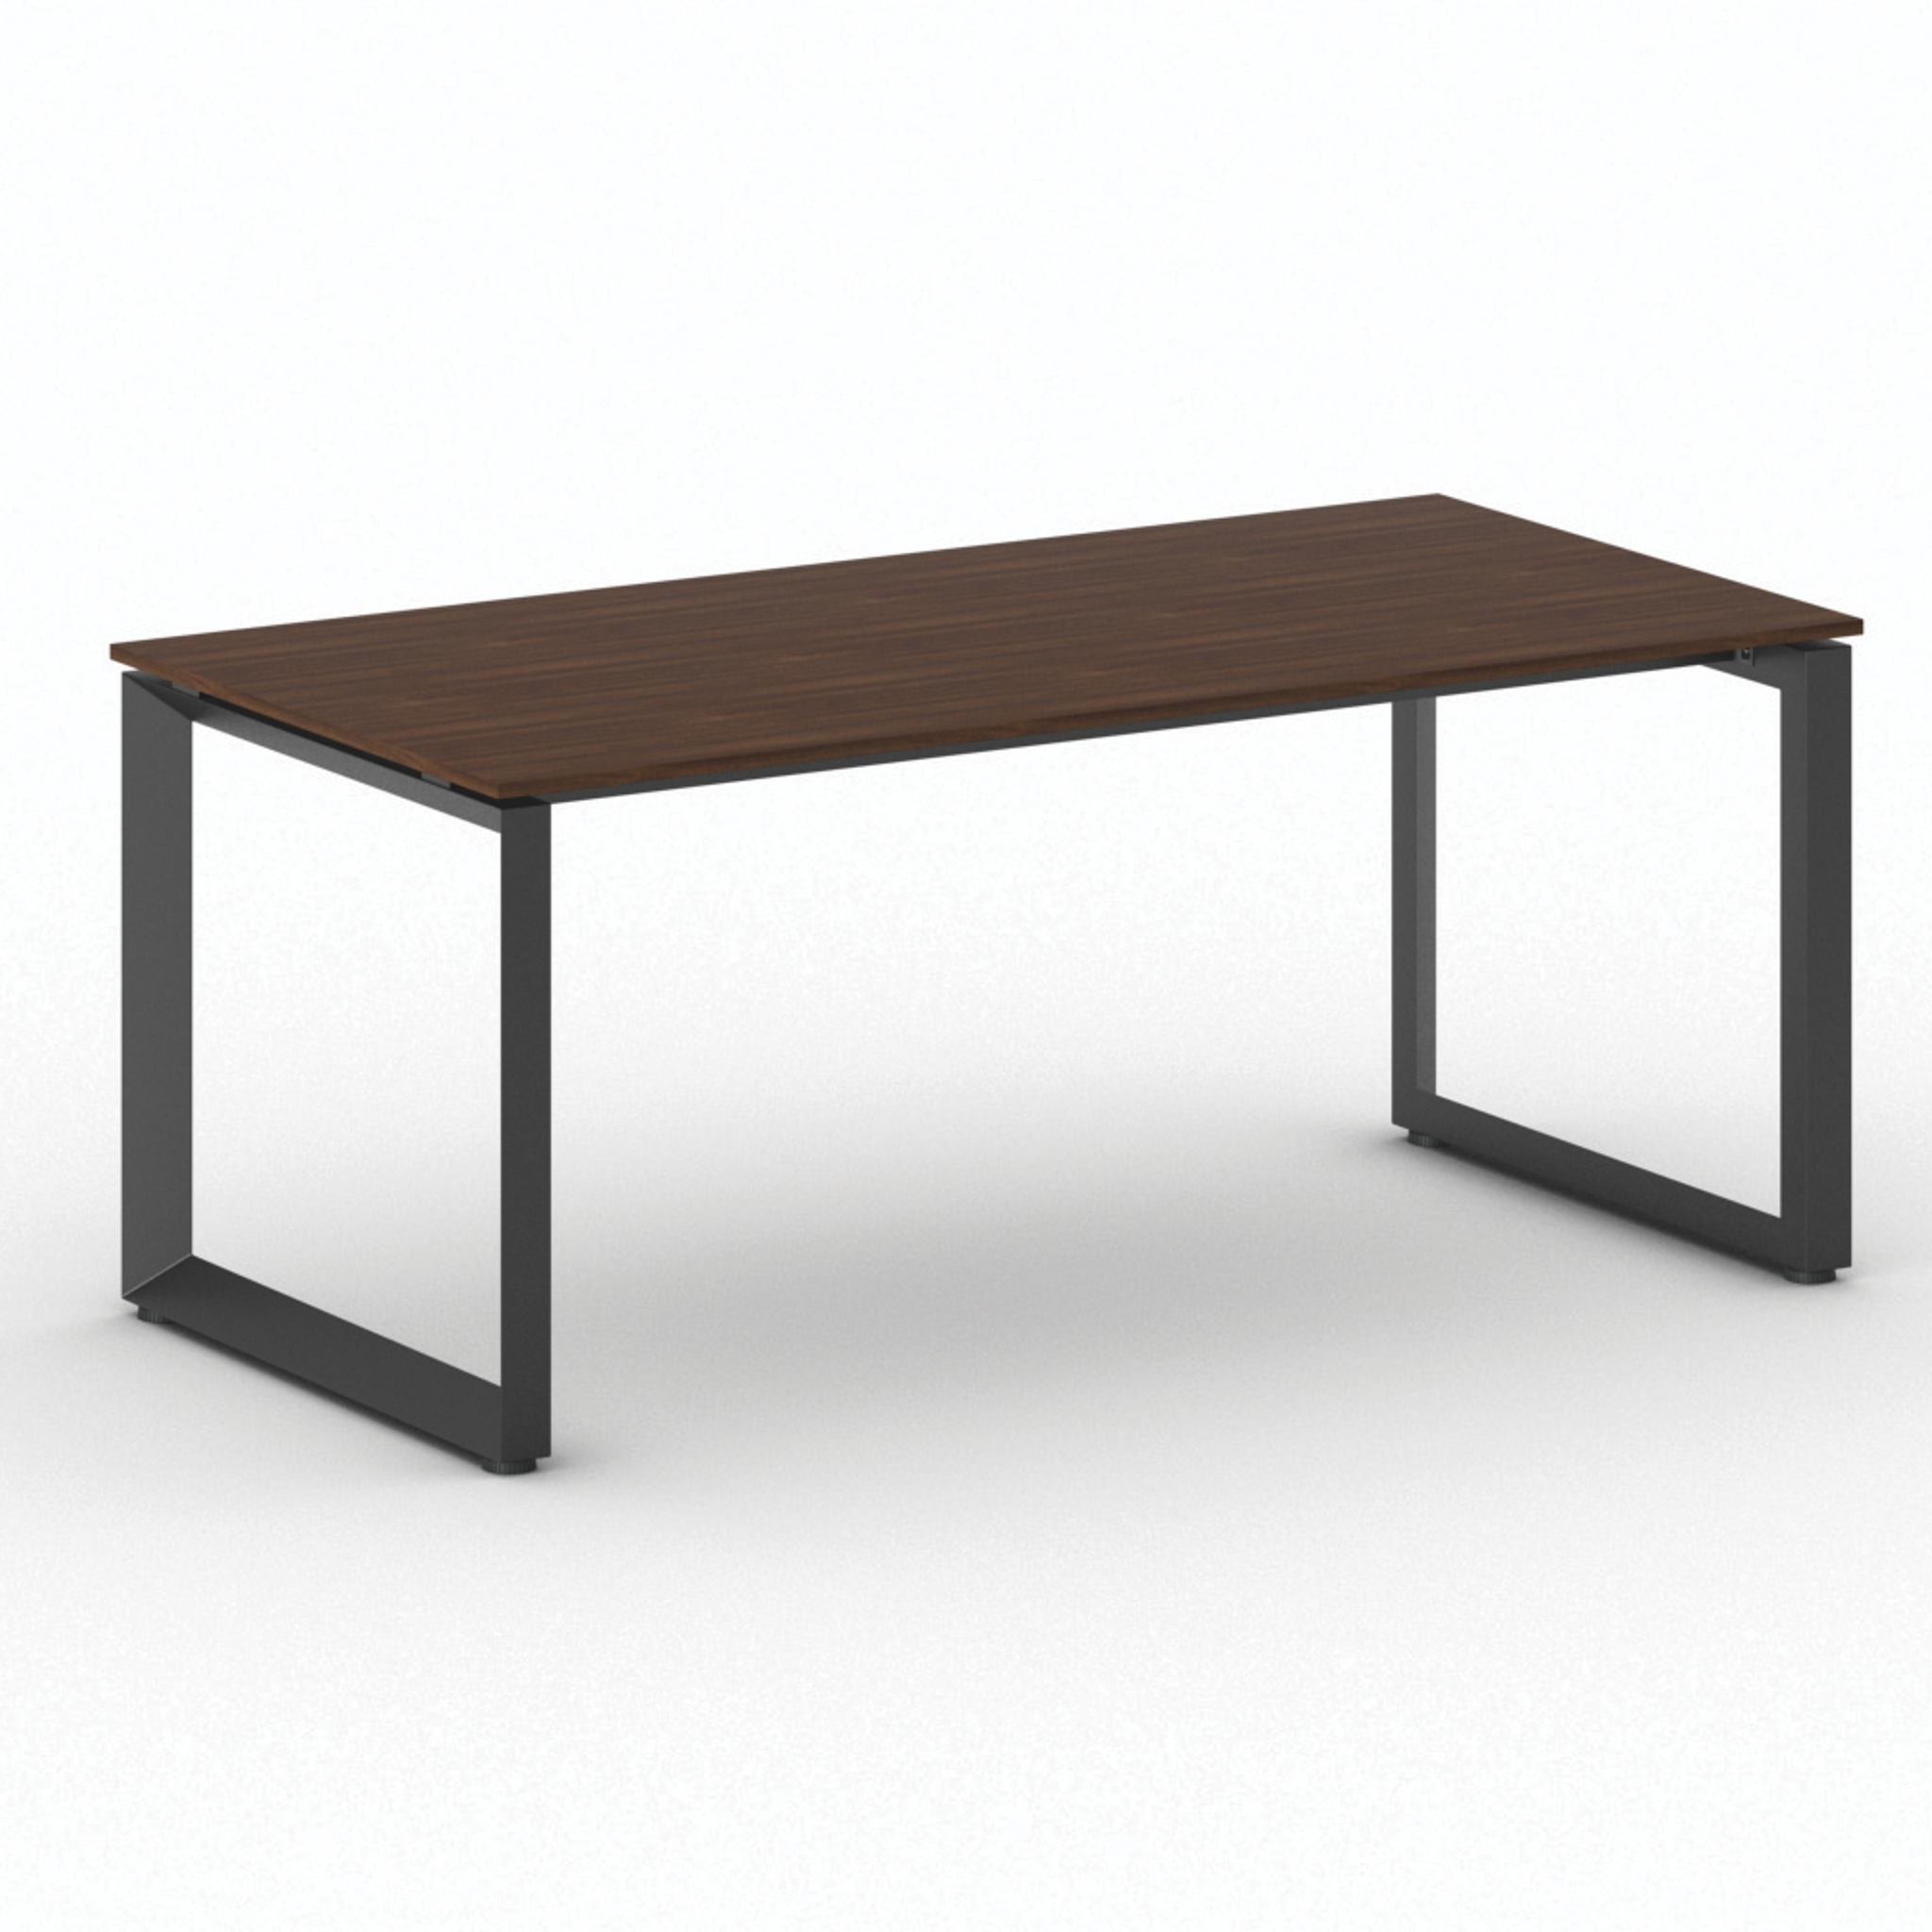 Kancelársky stôl PRIMO INSPIRE, čierna podnož, 1800 x 900 mm, orech